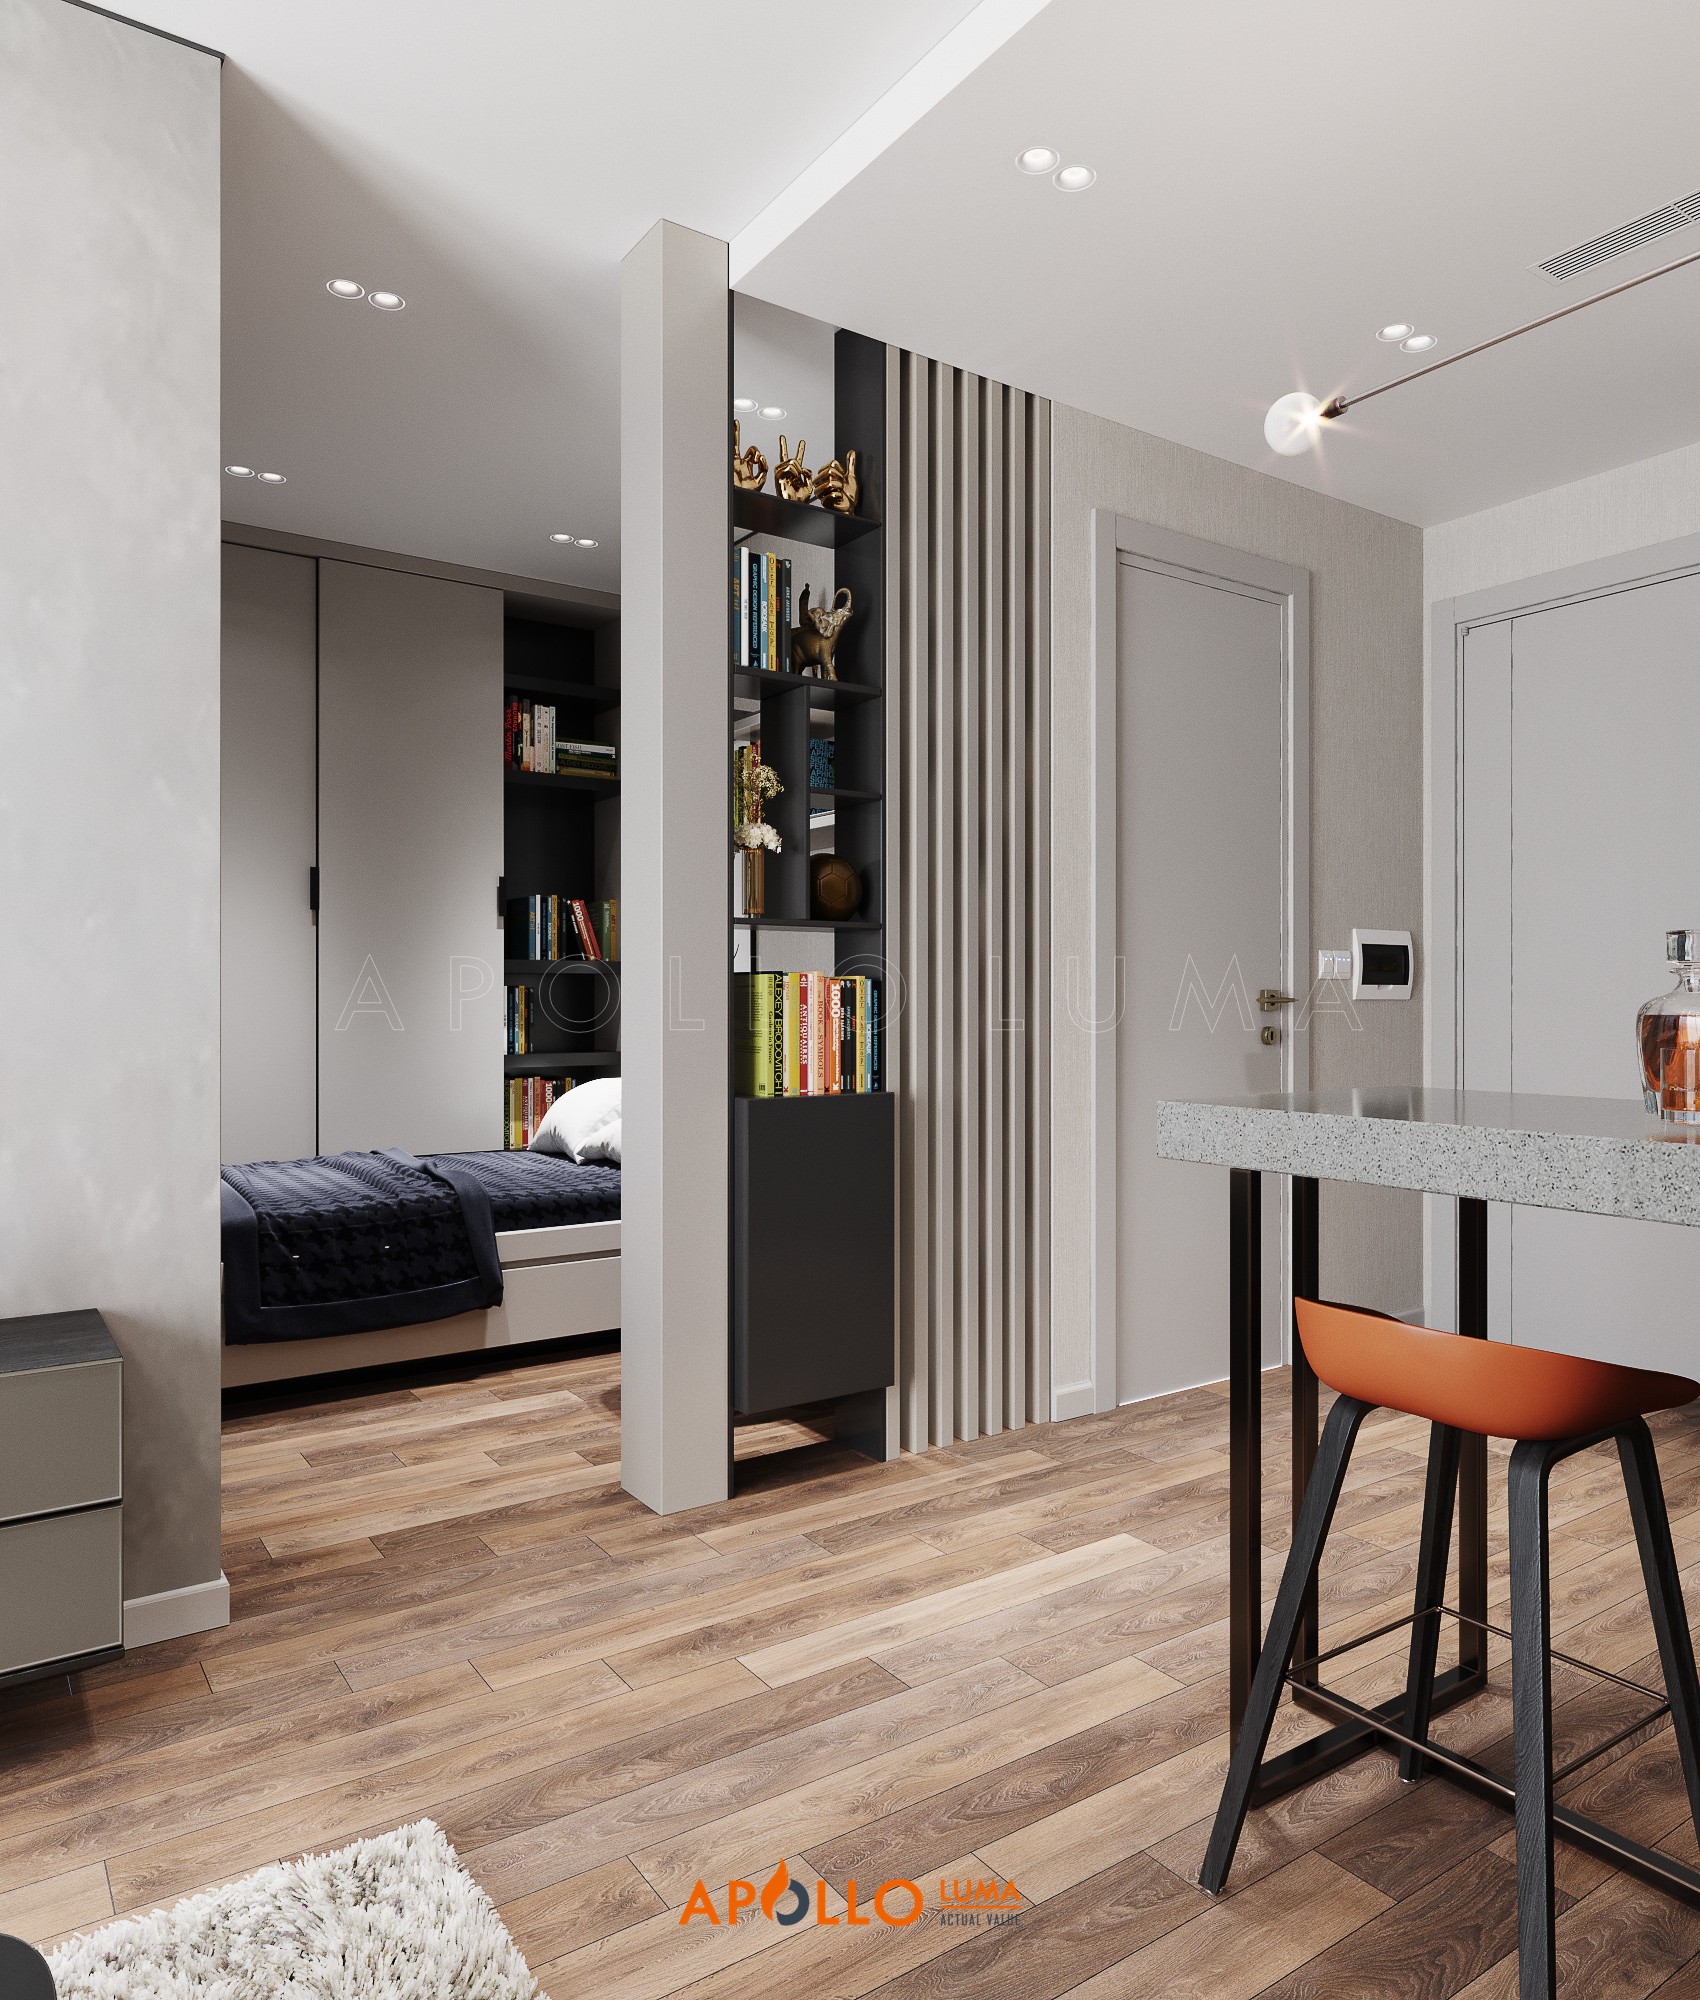 Thiết kế nội thất căn hộ 1 phòng ngủ Vinhomes Smart City Tây Mỗ